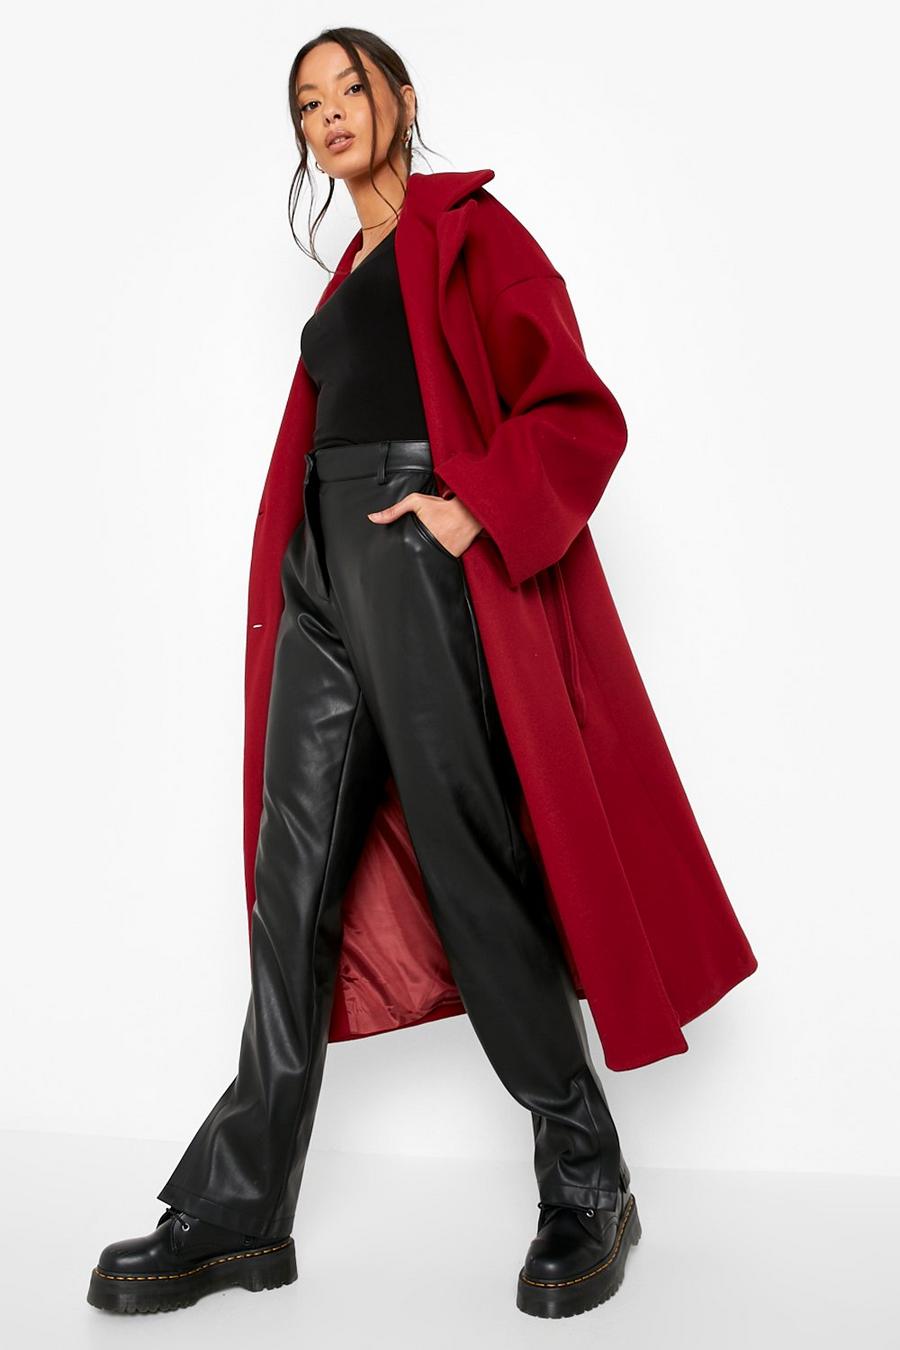 Manteau long effet laine à ceinture , Burgundy rouge